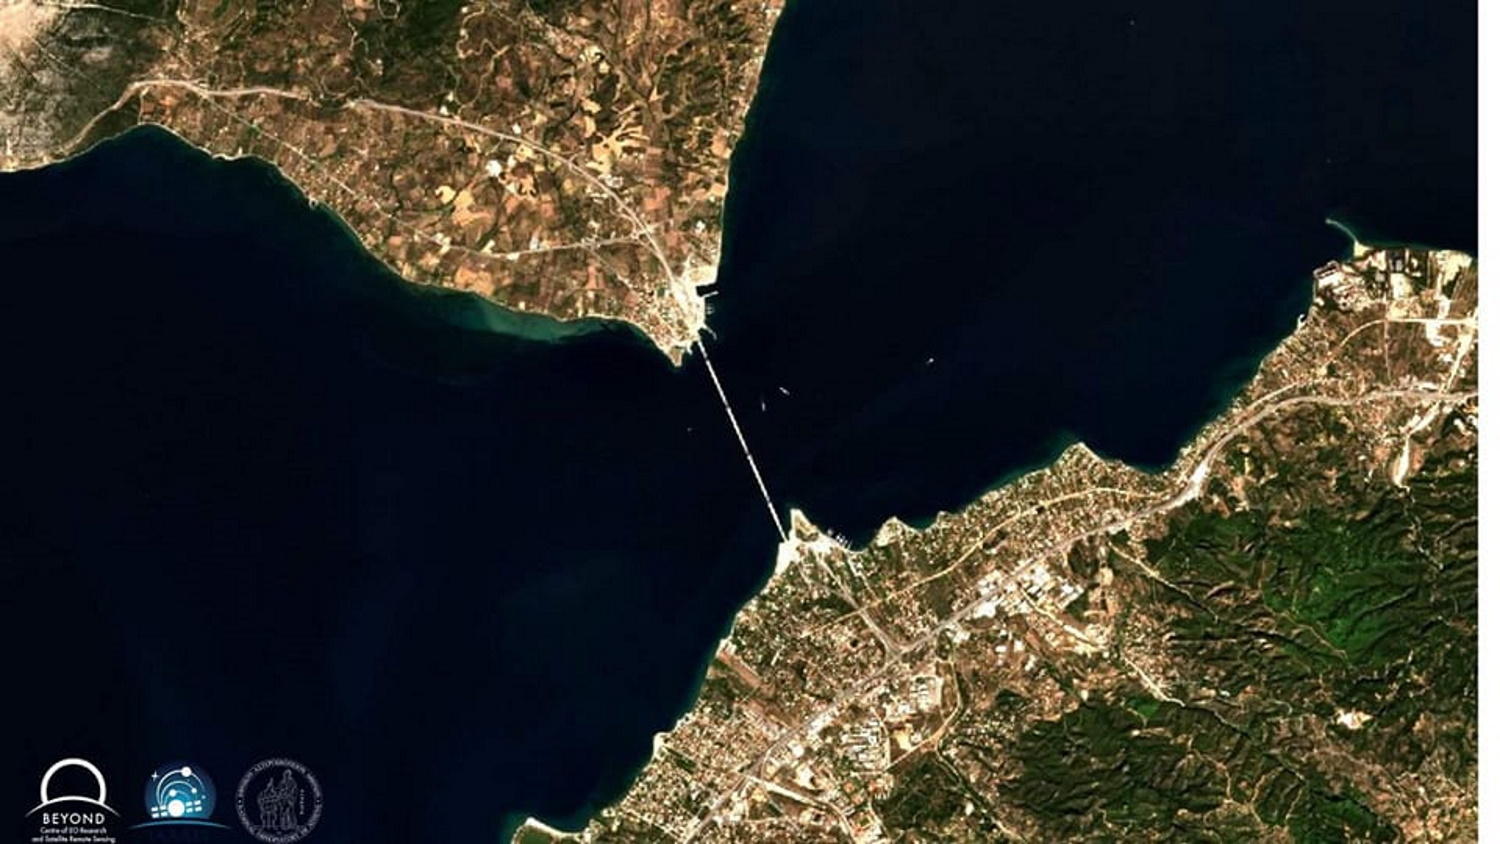 Γέφυρα Ρίου – Αντιρρίου: Εντυπωσιακή εικόνα από τον δορυφόρο του Copernicus